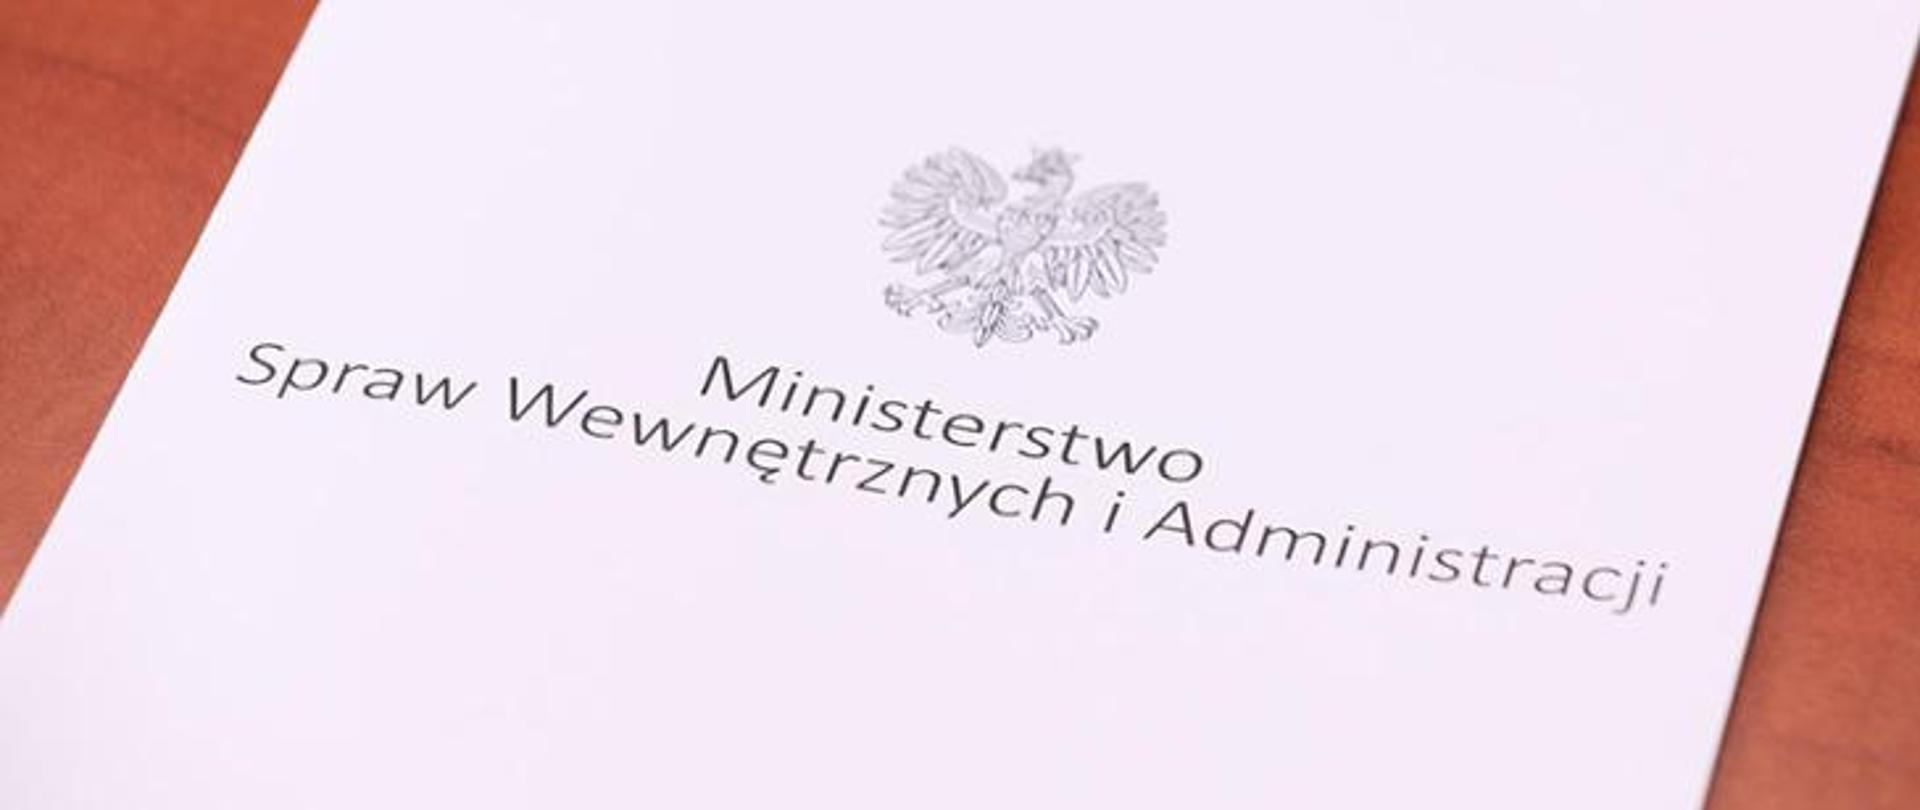 Ministerstwo_Spraw_Wewnętrznych_i_Administracji